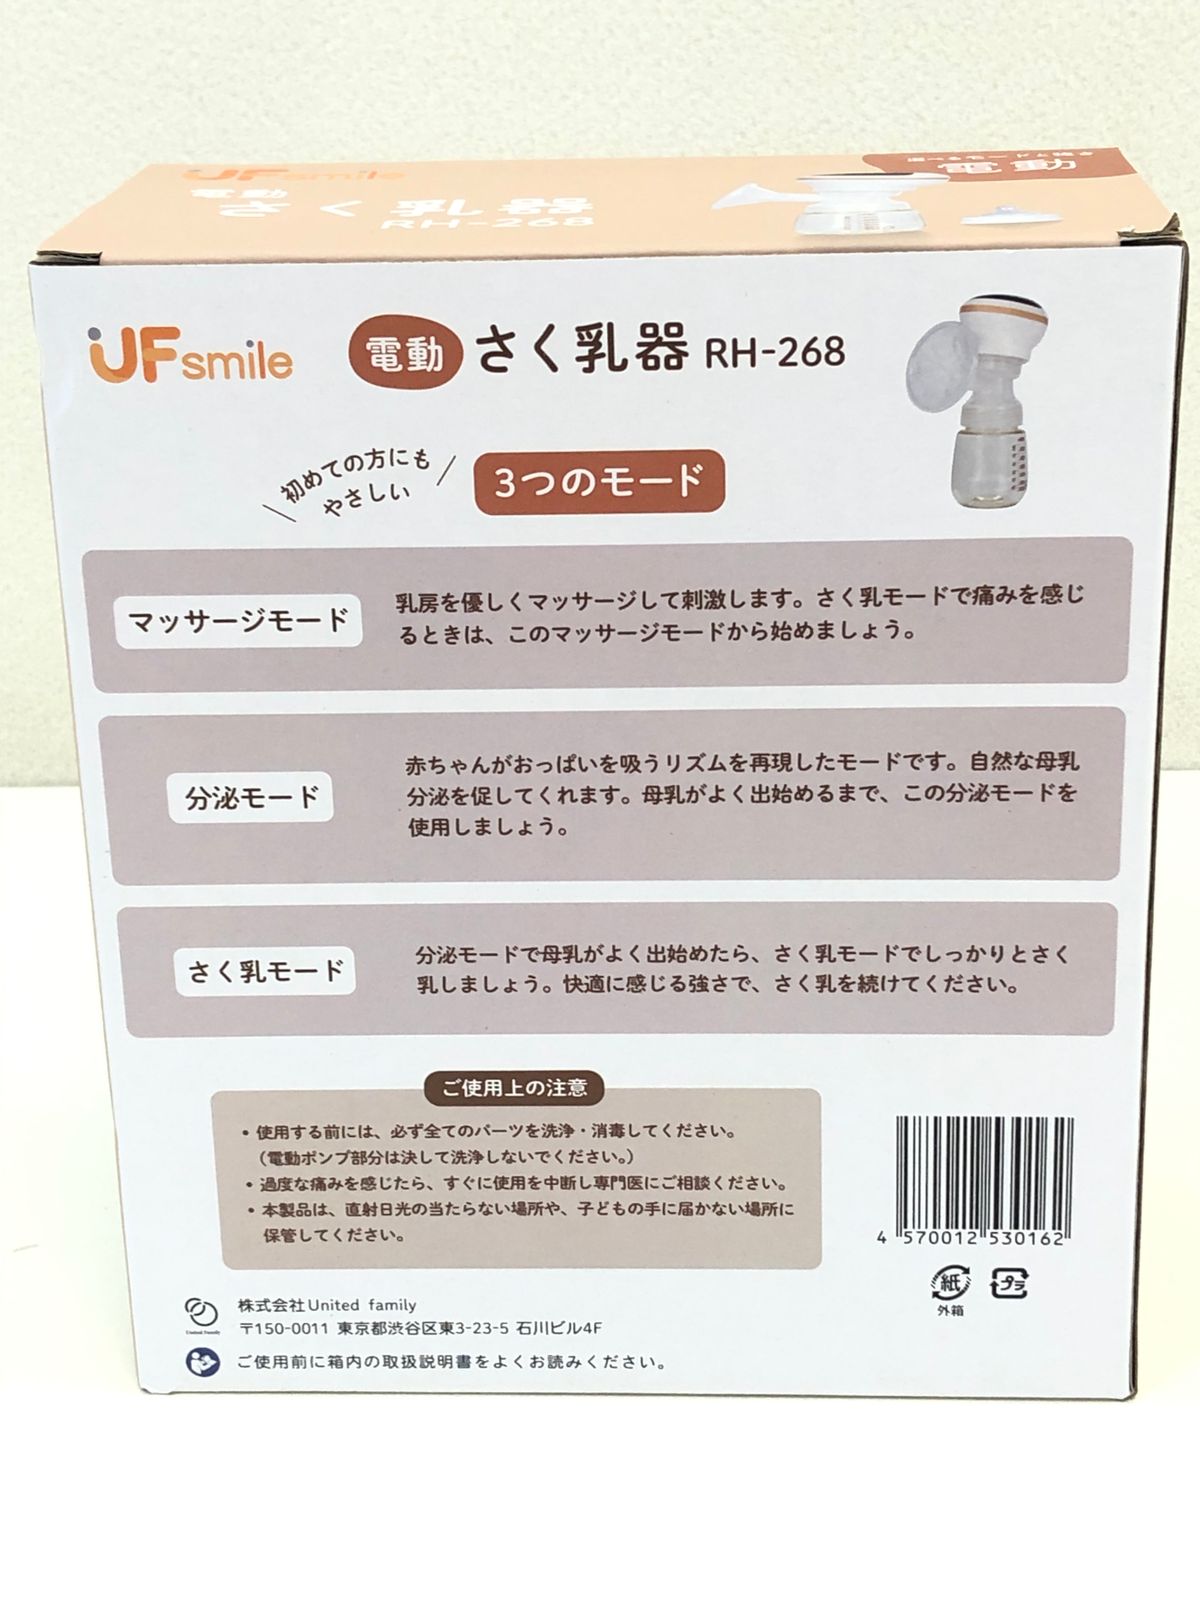 さく乳器 電動 RH-268 UFsmile 電動搾乳器 さく乳機 搾乳機 - 食事